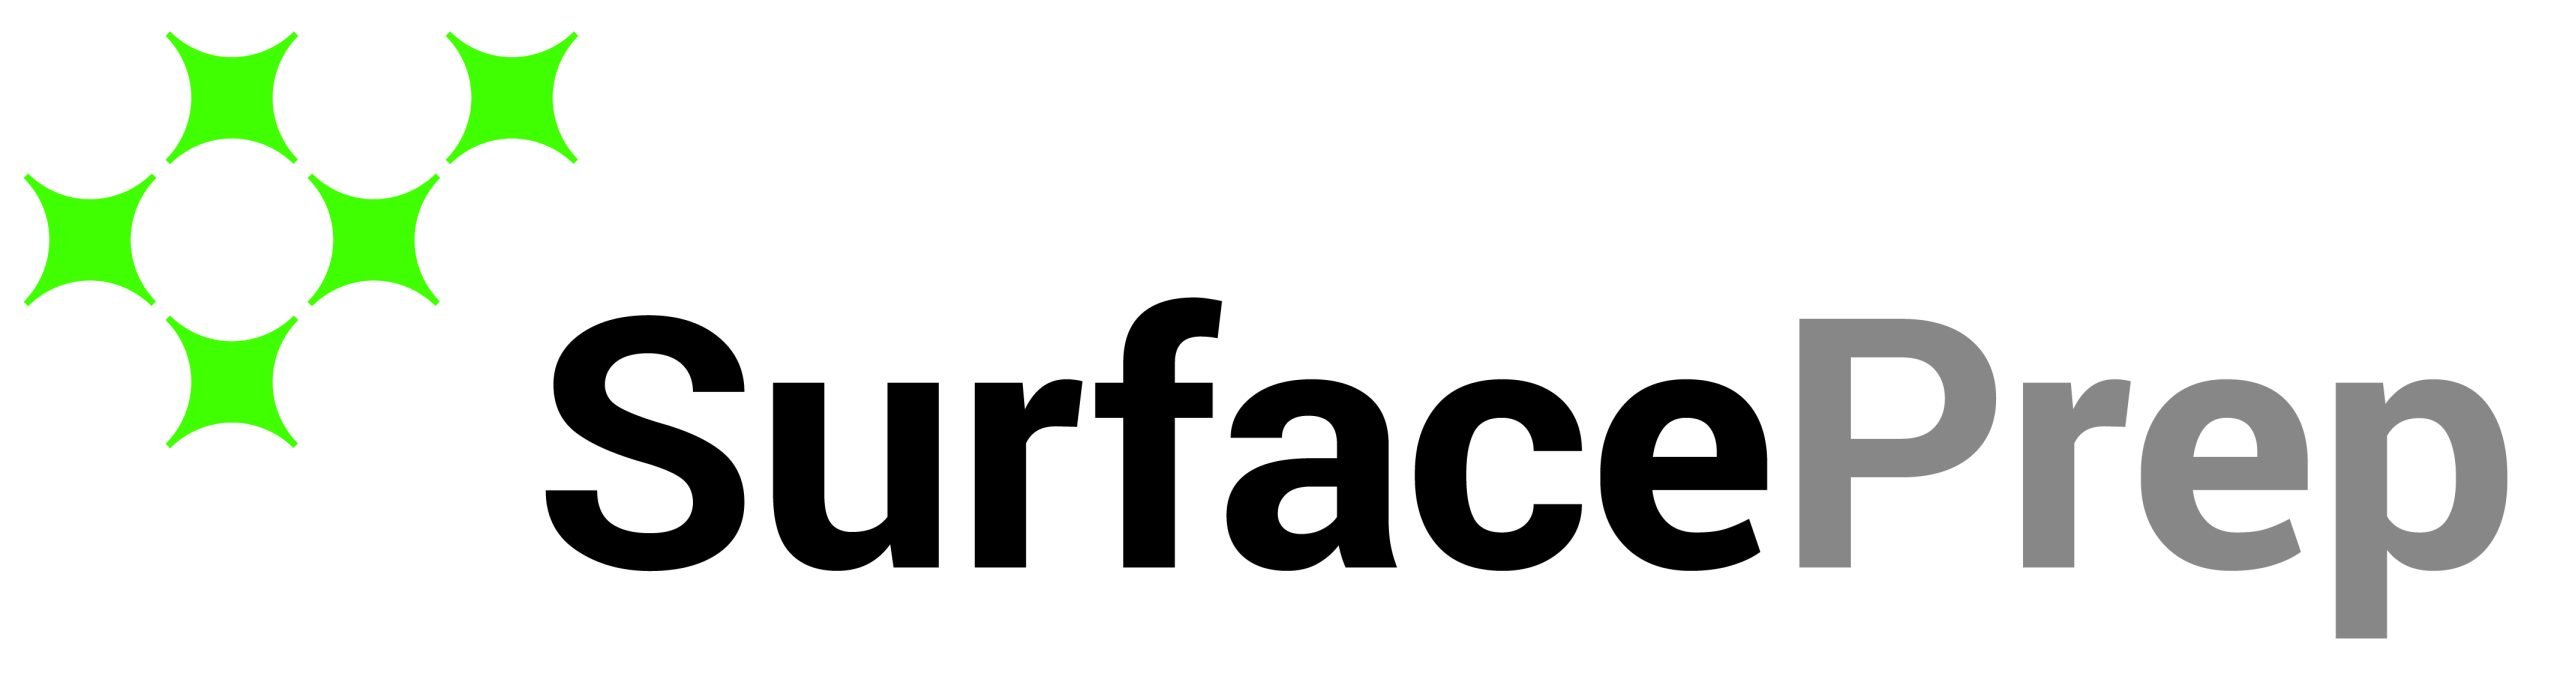 SurfacePrep Northeast Region logo